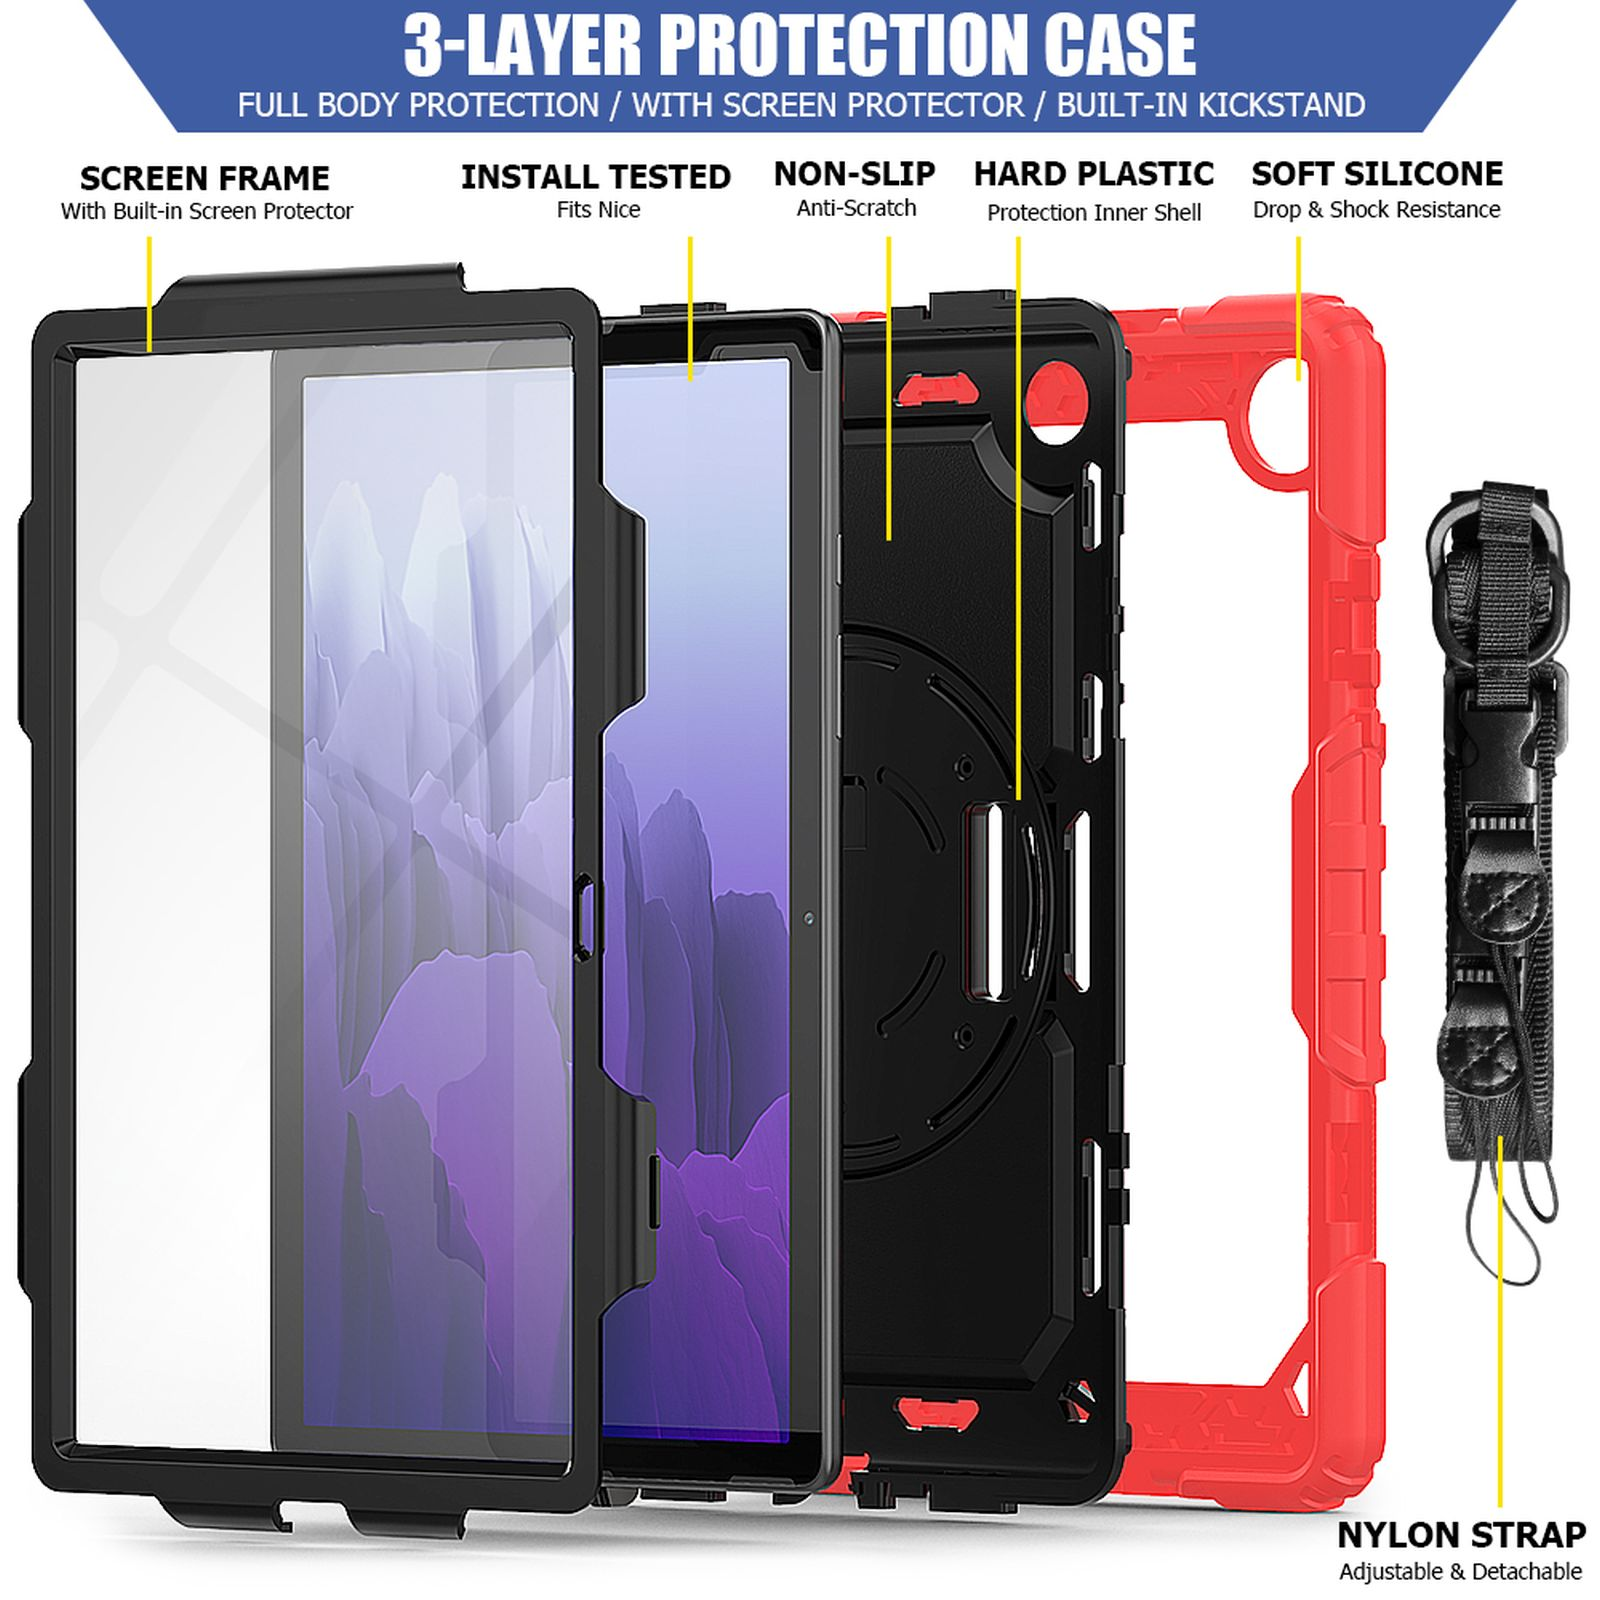 LOBWERK 4in1 Schutzhülle Case Bookcover Zoll A7 Galaxy für SM-T500 Samsung T505 Tab Rot Kunststoff, 10.4